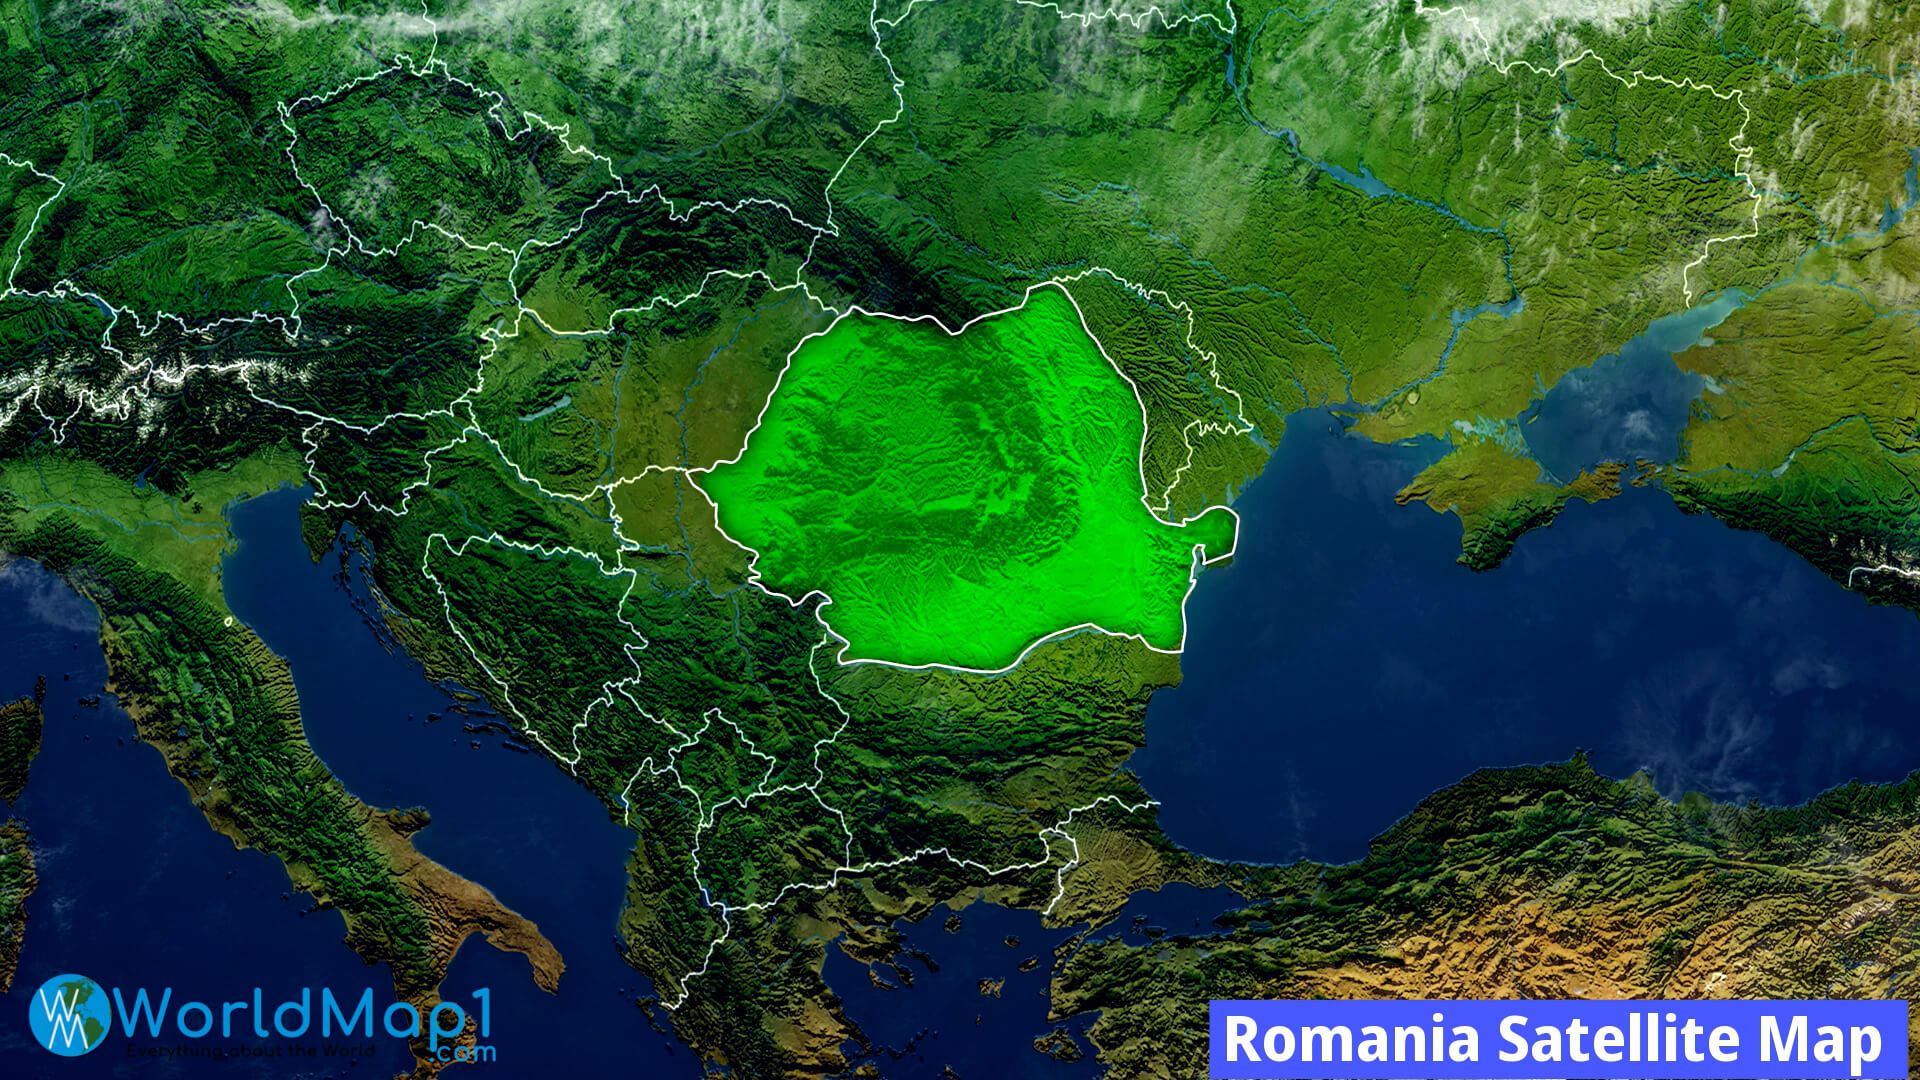 Romania Satellite Map